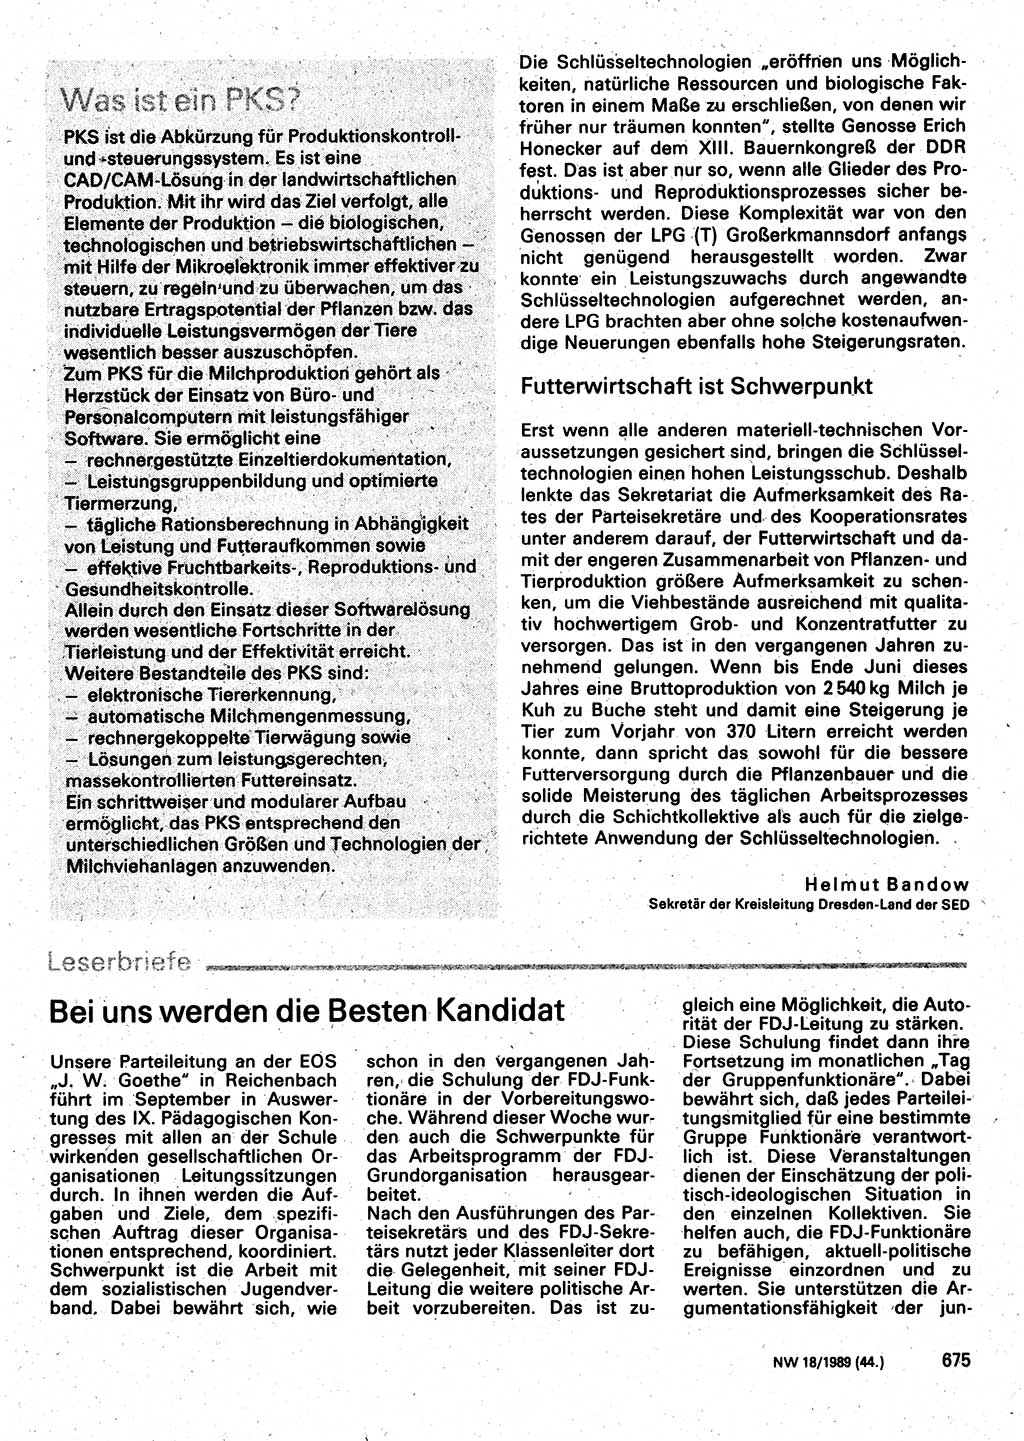 Neuer Weg (NW), Organ des Zentralkomitees (ZK) der SED (Sozialistische Einheitspartei Deutschlands) für Fragen des Parteilebens, 44. Jahrgang [Deutsche Demokratische Republik (DDR)] 1989, Seite 675 (NW ZK SED DDR 1989, S. 675)